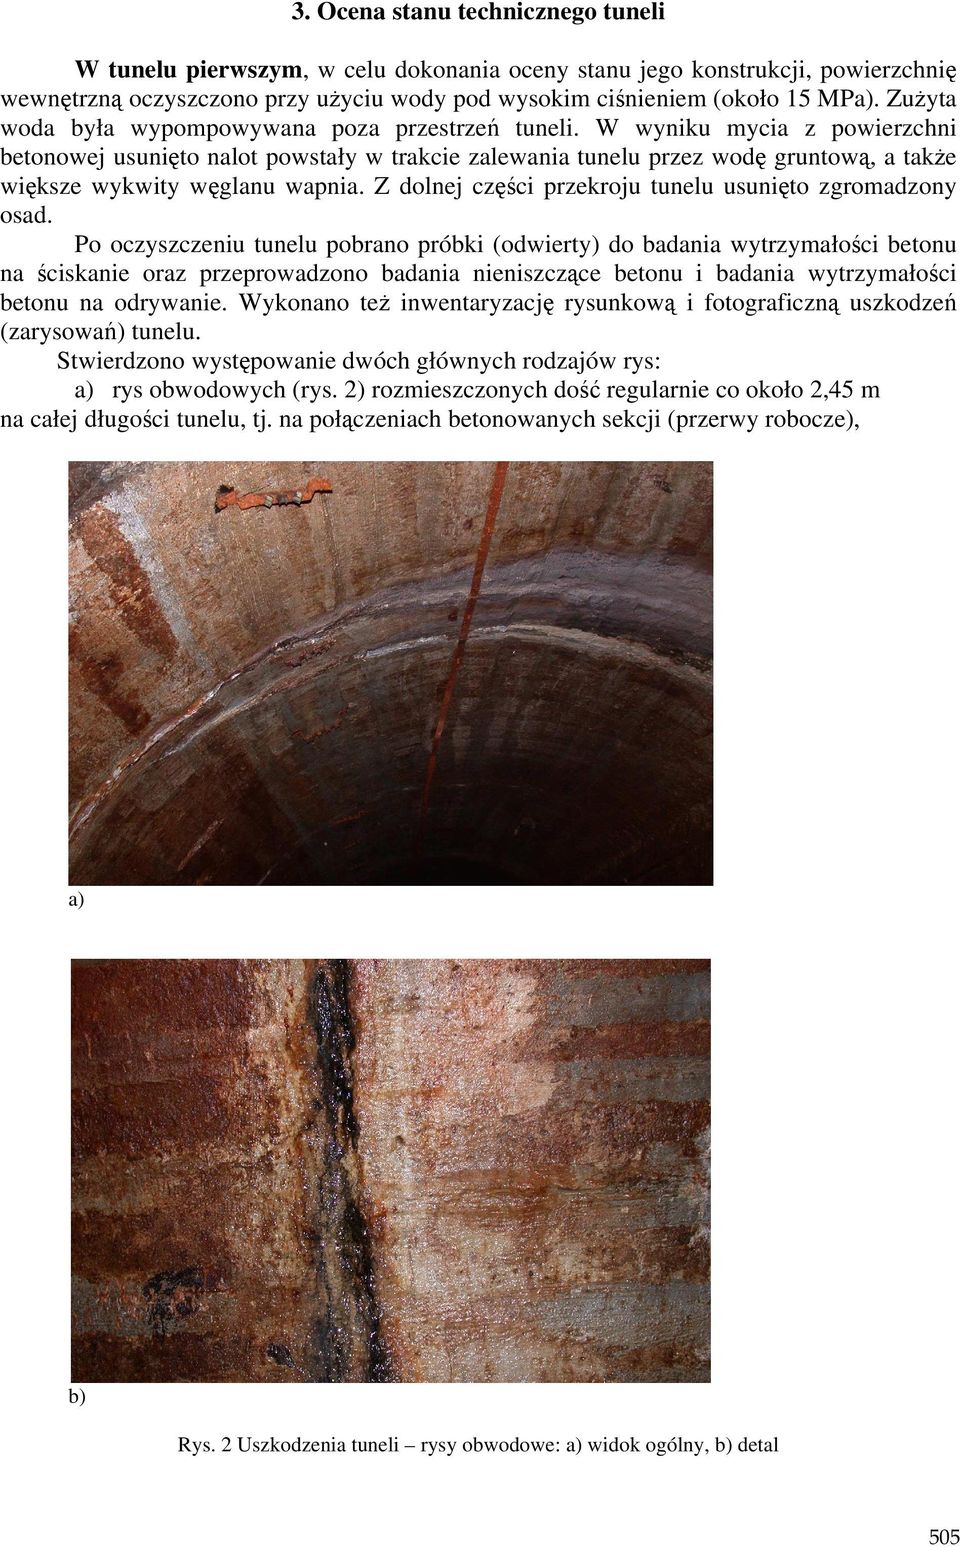 W wyniku mycia z powierzchni betonowej usunięto nalot powstały w trakcie zalewania tunelu przez wodę gruntową, a takŝe większe wykwity węglanu wapnia.